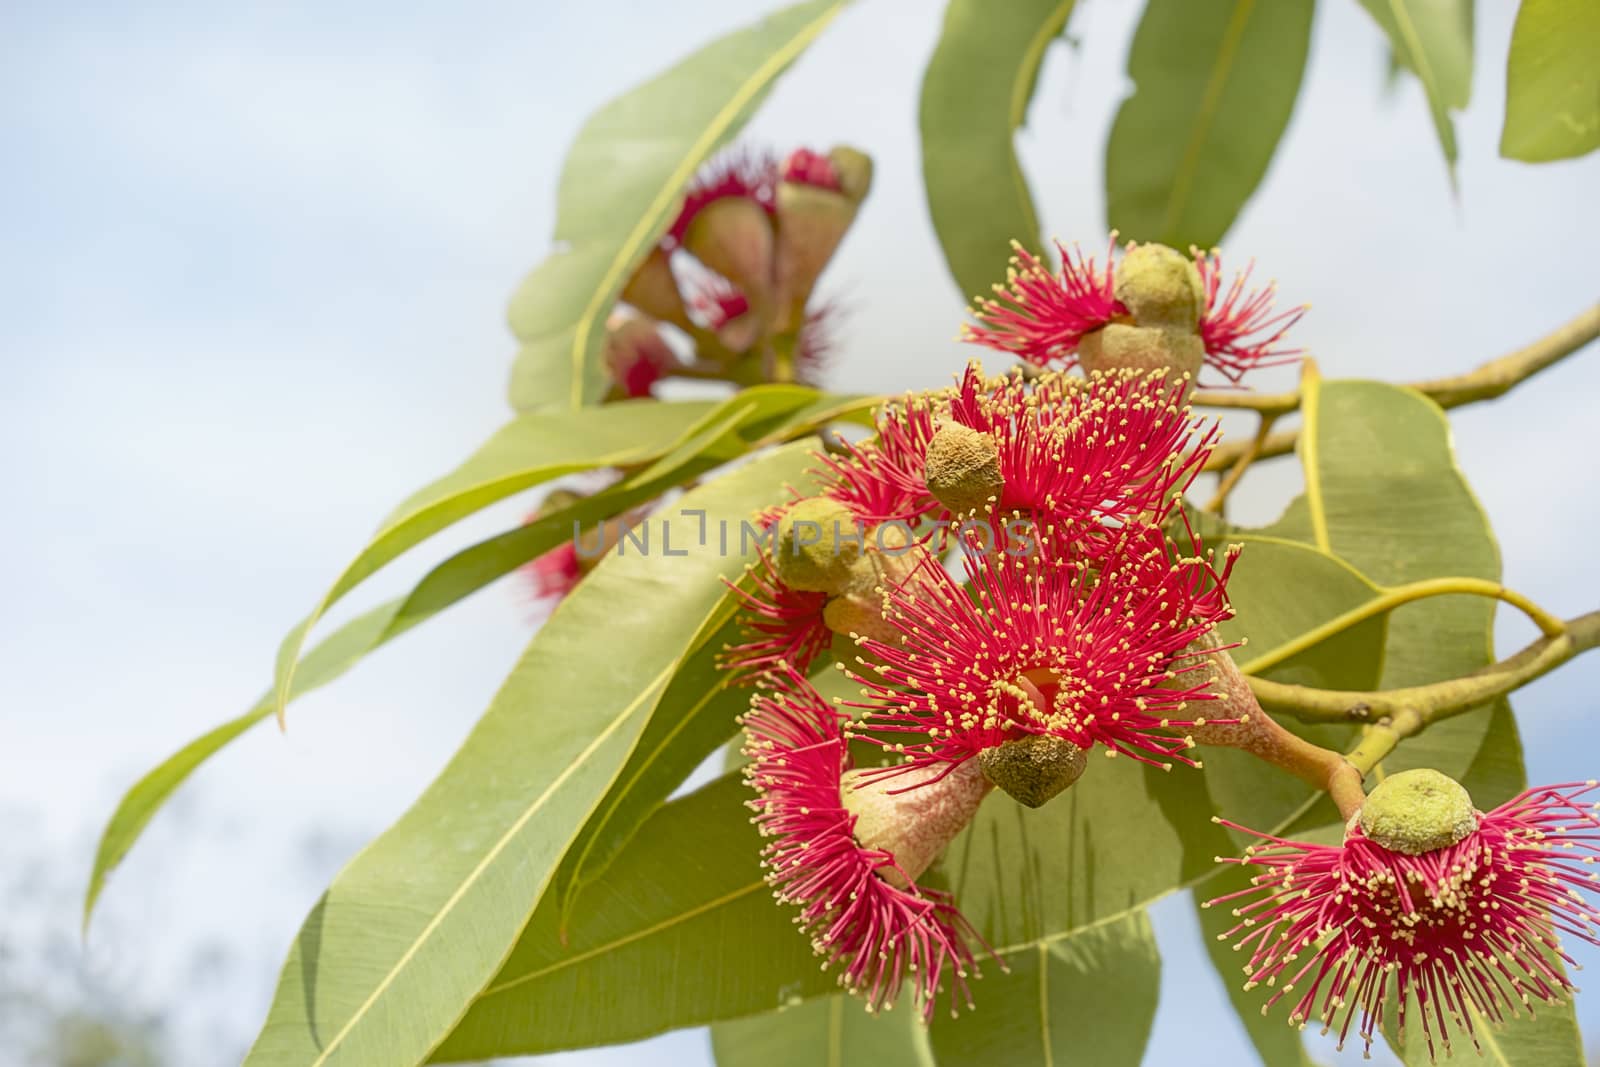 Australian red flower eucalyptus tree by sherj